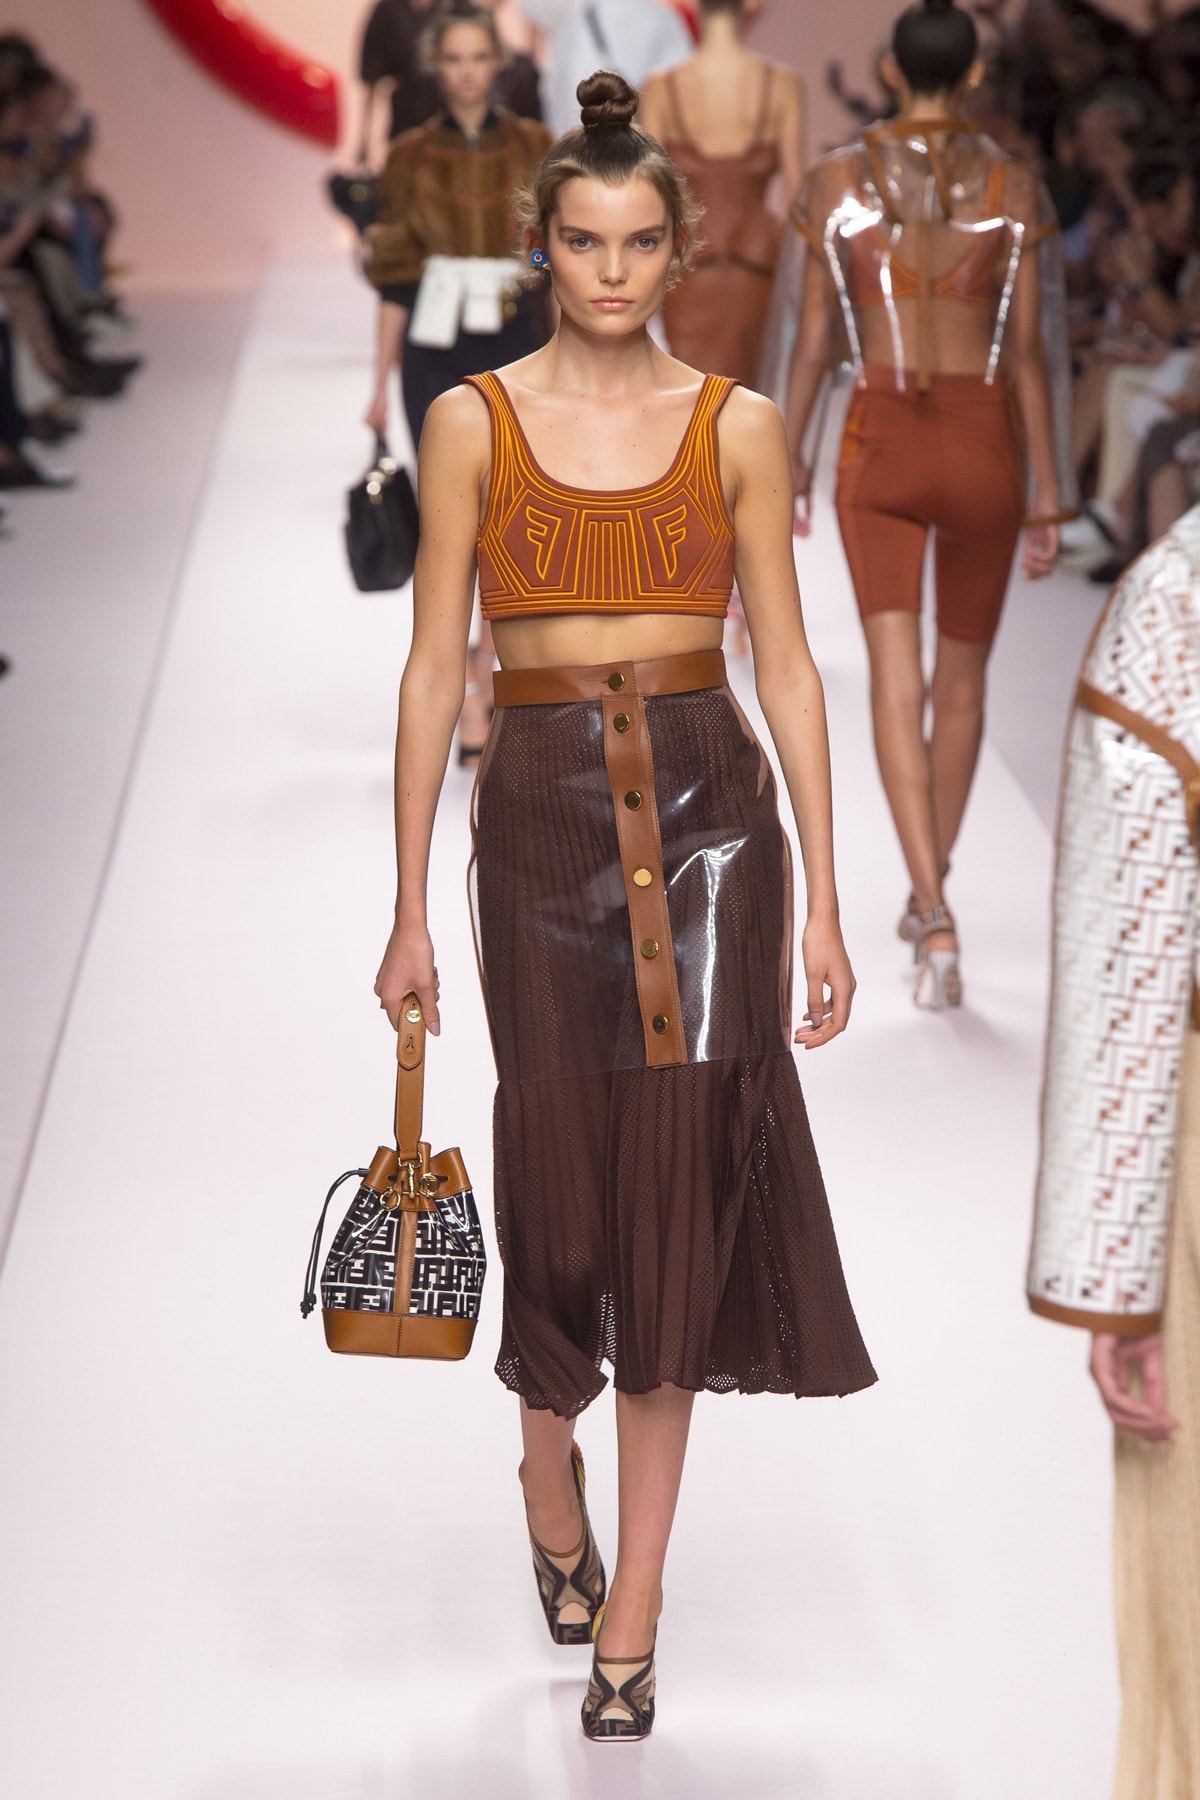 Fendi Karl Lagerfeld Spring Summer 2019 Milan Fashion Week Show Collection Crop Top Orange Skirt Brown